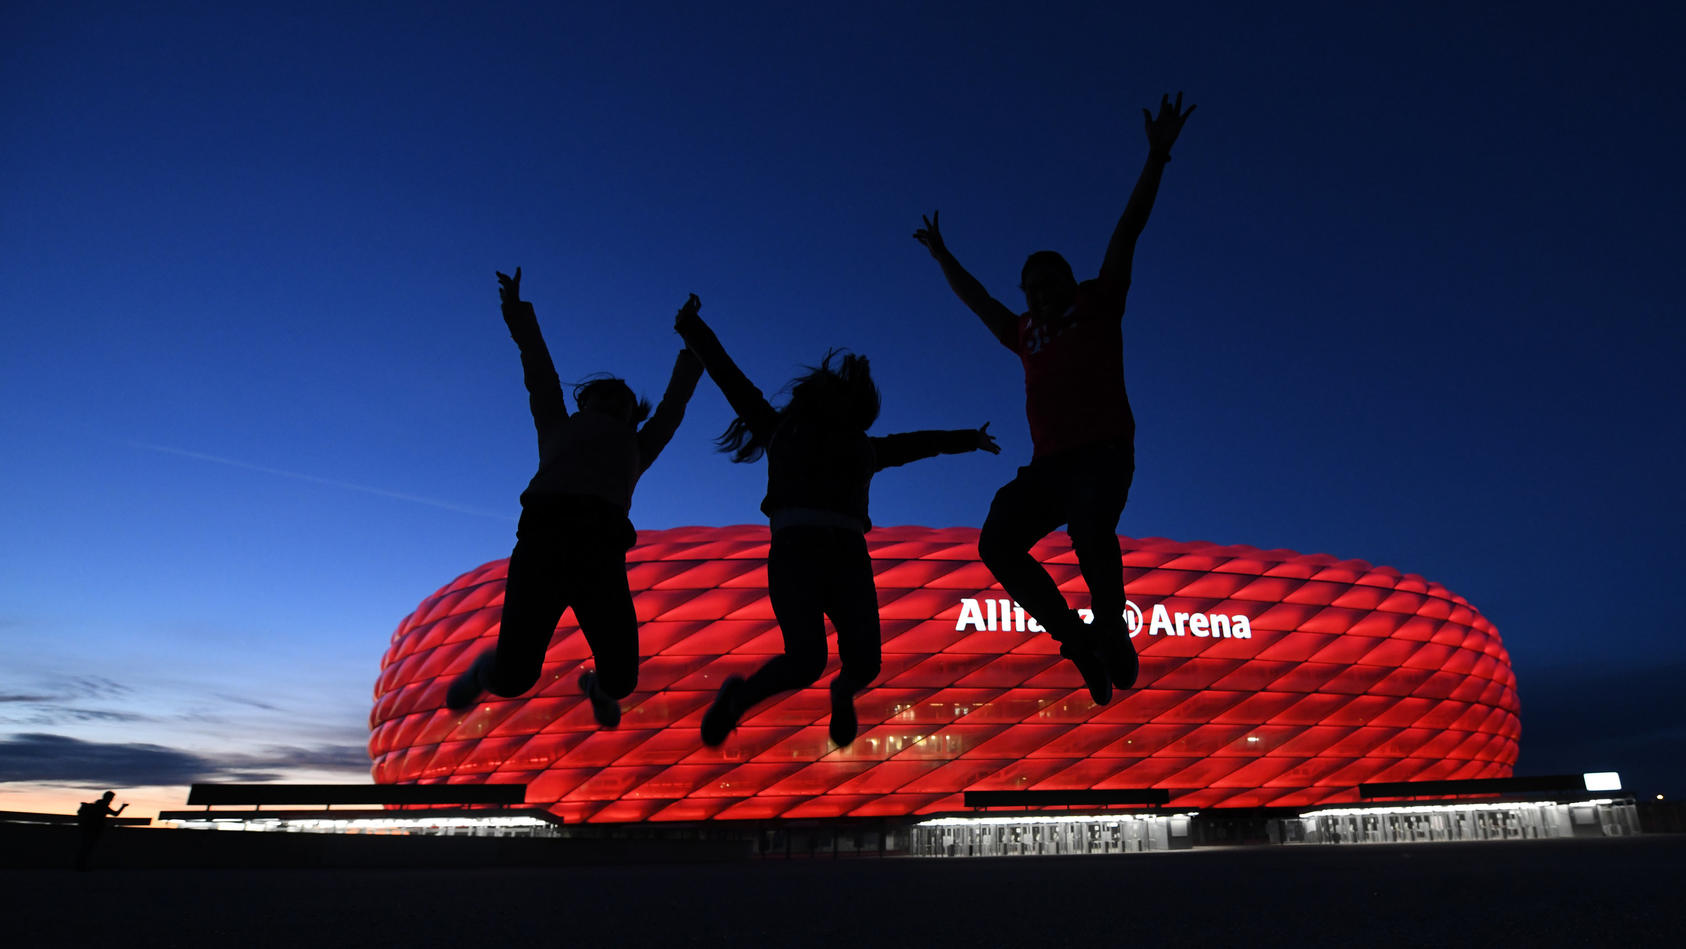 08.05.2021, Bayern, München: Drei Fans springen nach der Partie in der Fußball Bundesliga FC Bayern München - Borussia Mönchengladbach vor der Allianz Arena in die Höhe. Einige Fans haben sich vor dem Stadion versammelt. Die neuen Corona-Bestimmungen